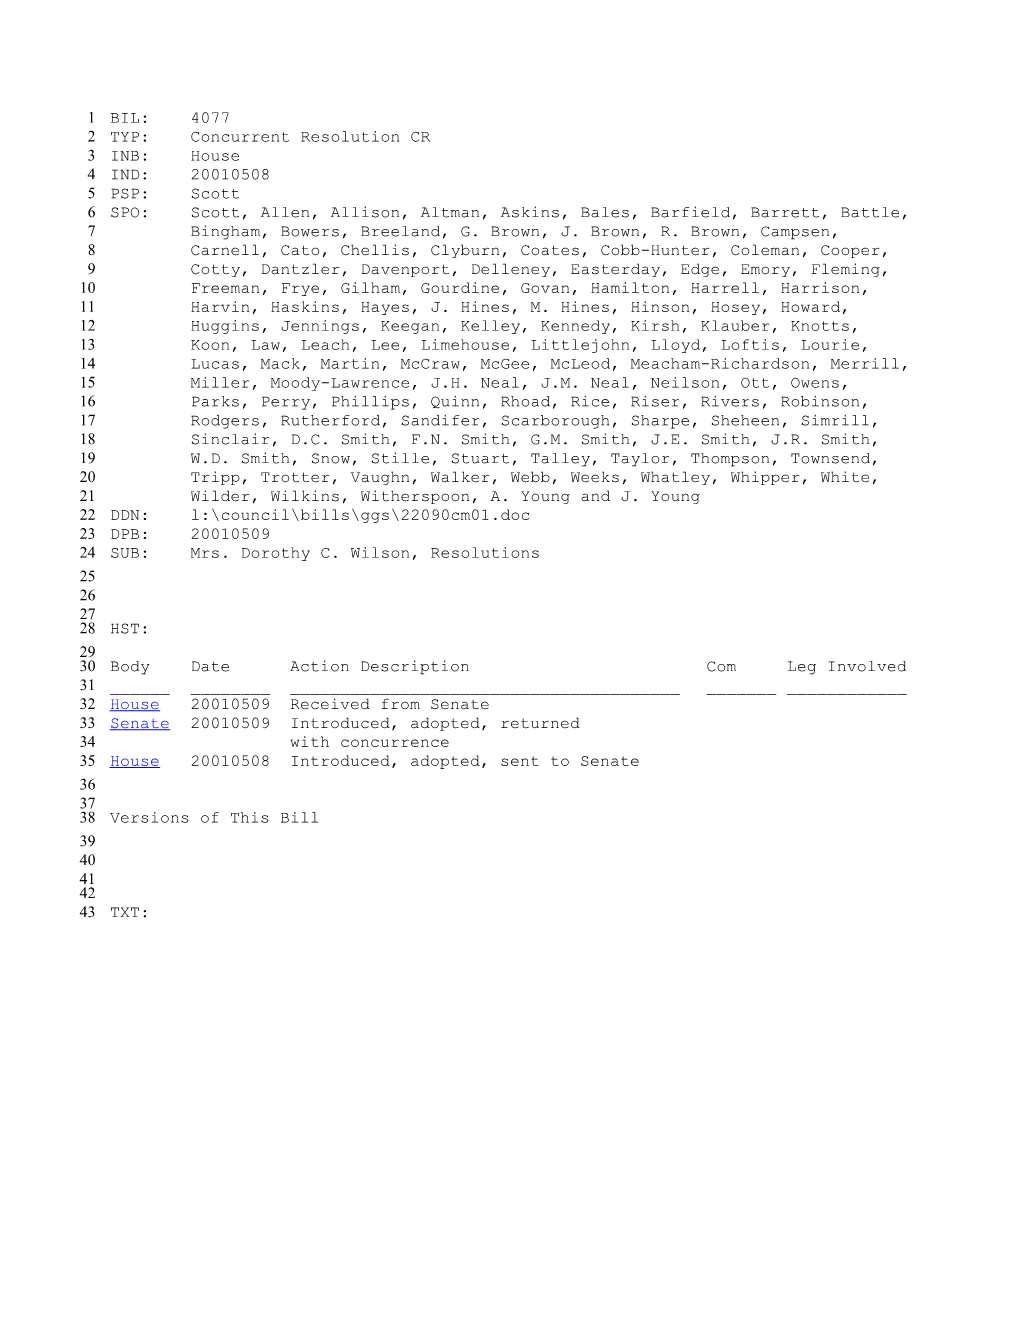 2001-2002 Bill 4077: Mrs. Dorothy C. Wilson, Resolutions - South Carolina Legislature Online